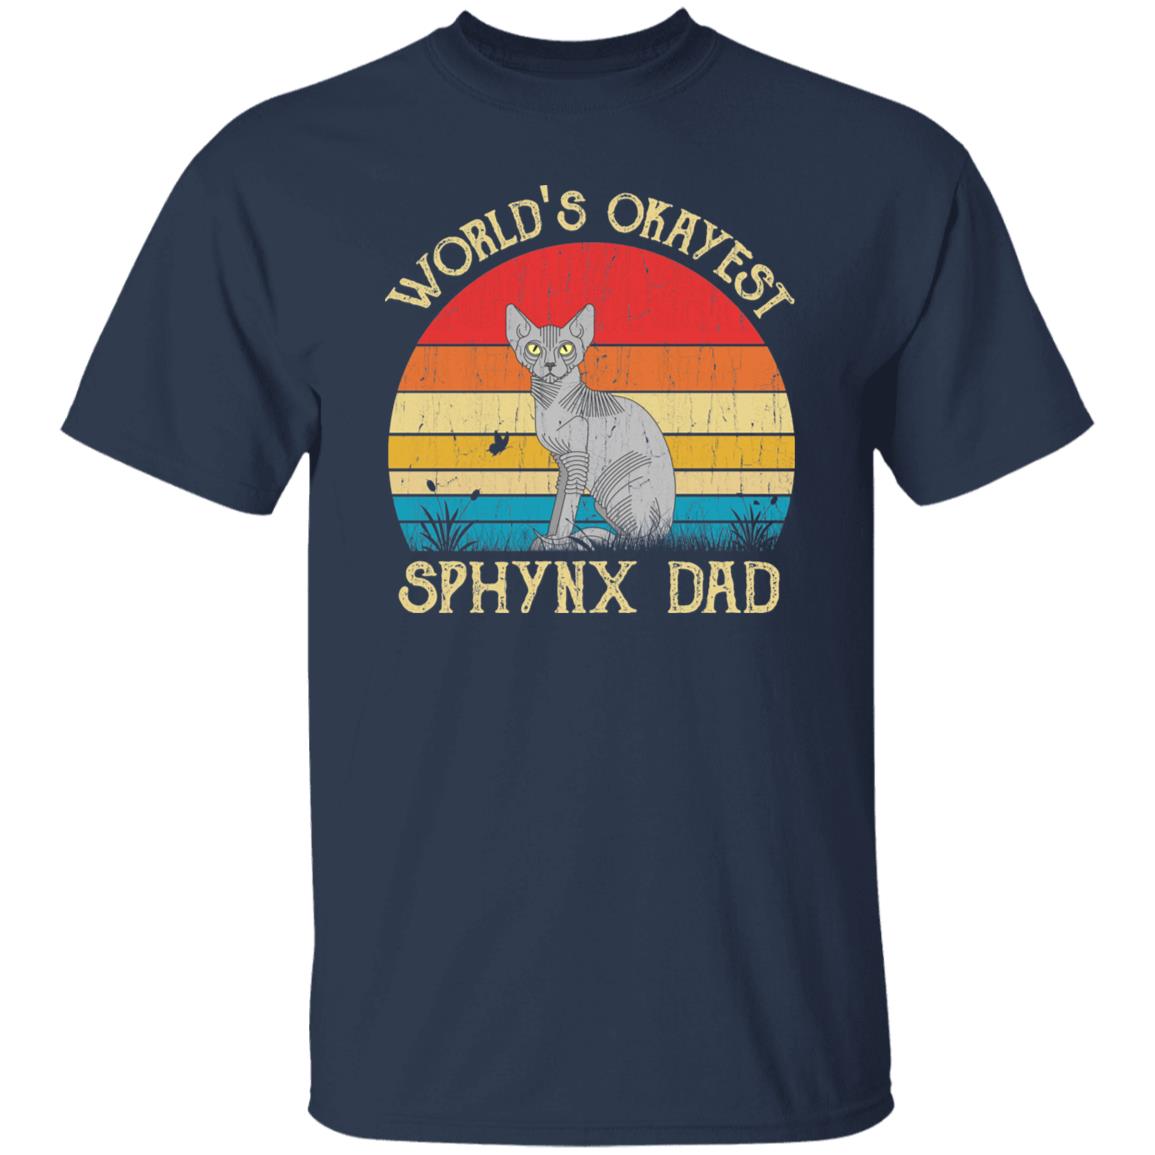 World's Okayest Sphynx dad Retro Style Unisex T-shirt Black Navy Dark Heather-Navy-Family-Gift-Planet